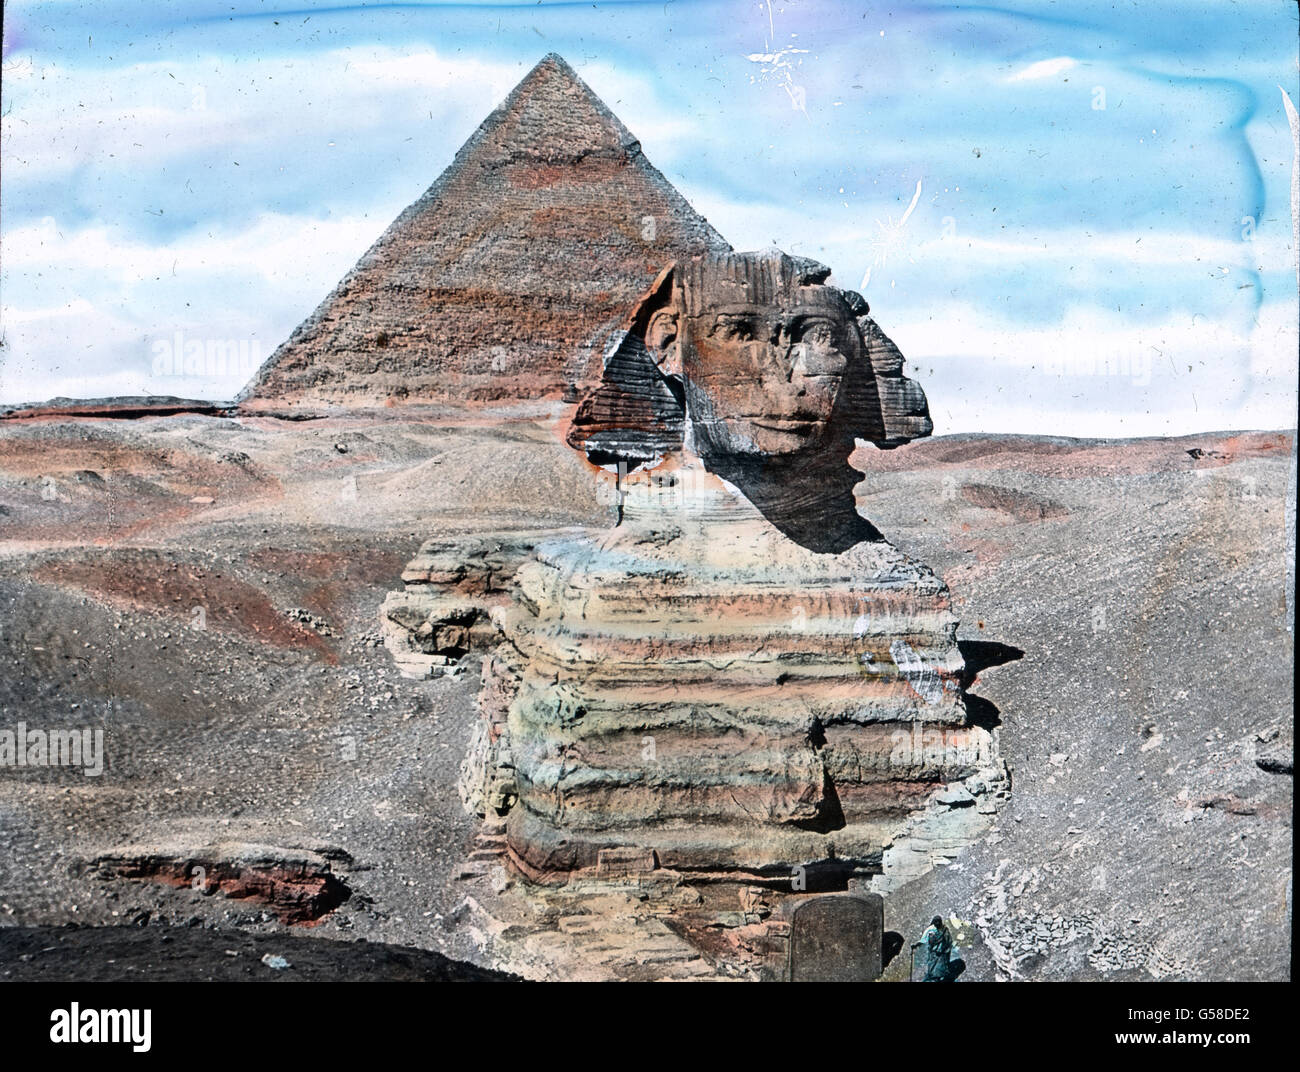 Dans Die Zeit des Pharao Chefren um 2800 C. Chr. Verlegt man auch die Entstehung dieses rätselhaften Bildwerkes. Es ist der Sphinx, der aus dem Felsen gehauene riesenhafte ruhende Löwe mit dem Menschenantlitz, symbole der göttlichen dem Herrschermacht der Pharaonen, weshalb anderswo Sphinxe öfter das Antlitz des Königs tragen. Diesen Sphinx umfächelte gelbbraunen Wüstenwind mit der Armen hielt nhi der Wüstensand umschlungen trutzig, aber mit seinem da er lag Haupt, das schon den Kanonenkugeln Zielscheibe gedient sla. La guerre donc, das das Bild der Sphinx mit der dahinter Pyramide noch von v Banque D'Images